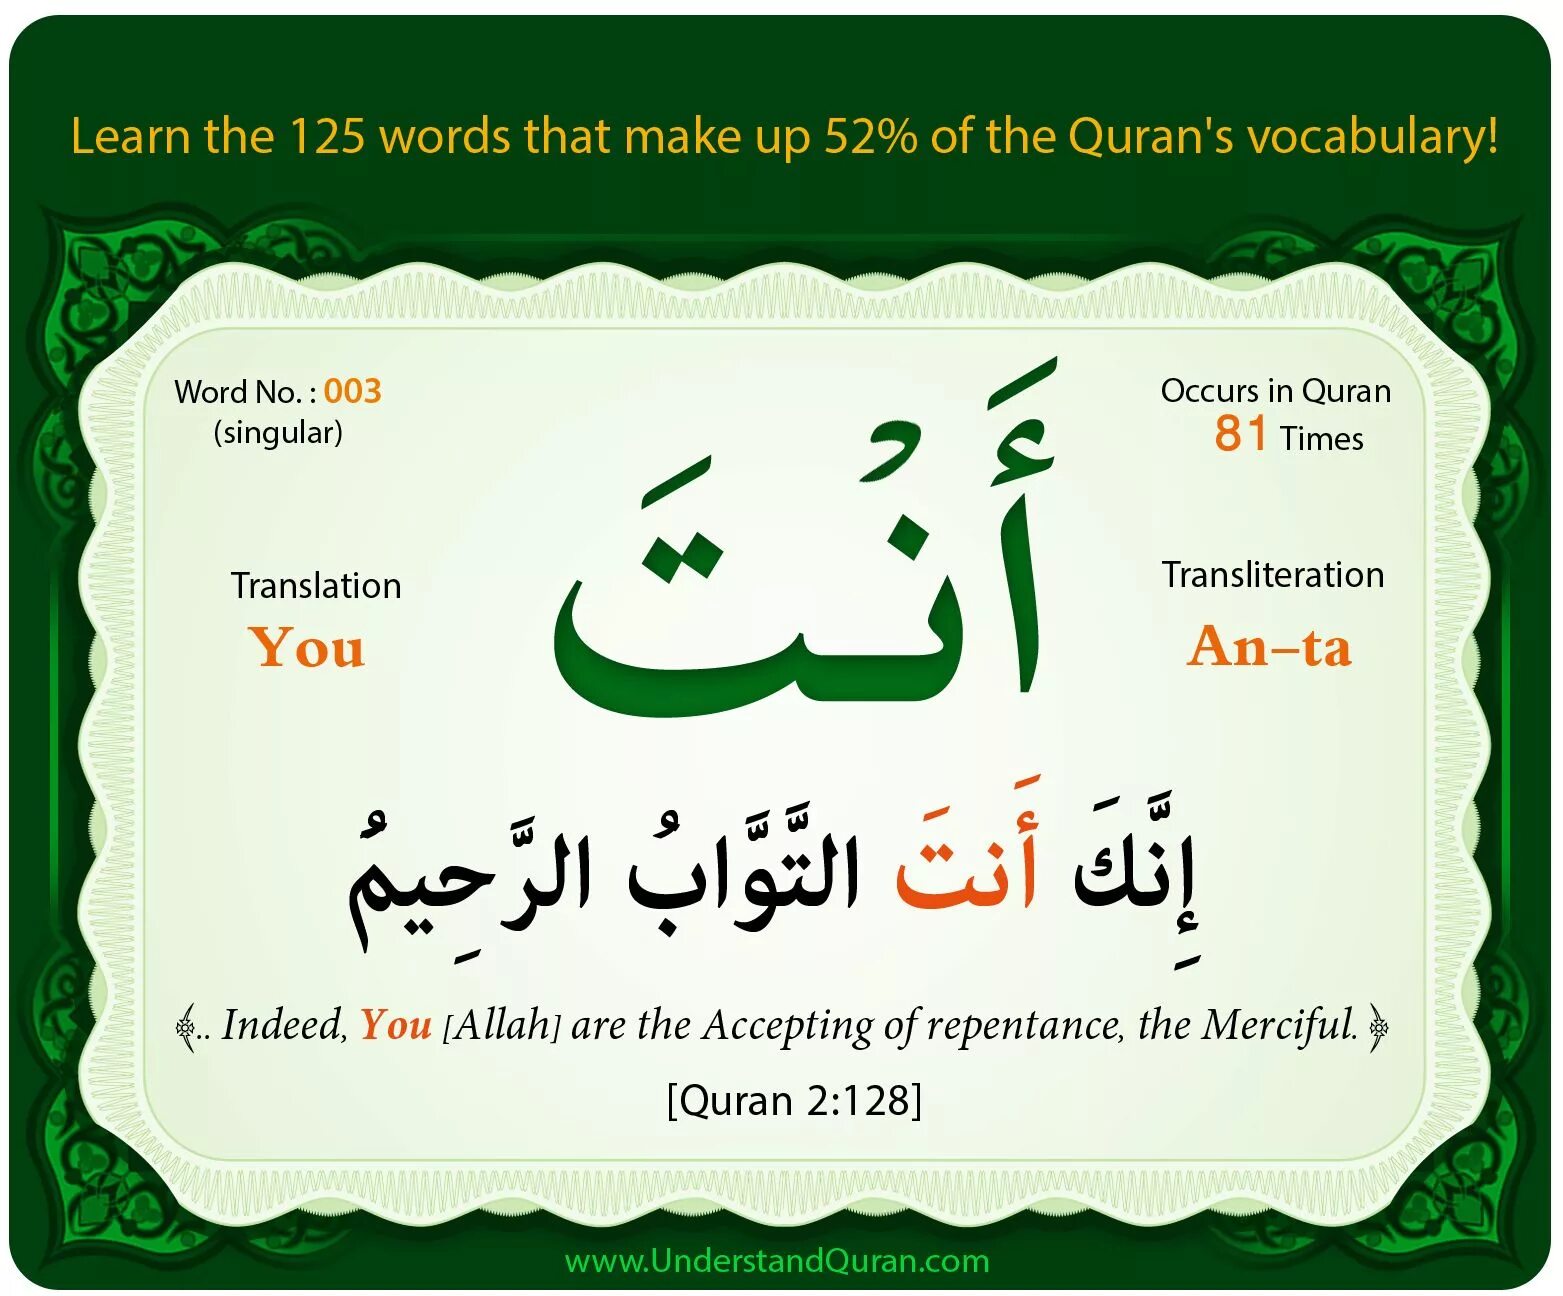 Слово Коран на арабском. Фразы из Корана на арабском. Дуа на арабском языке. Цитаты из Корана на арабском языке.